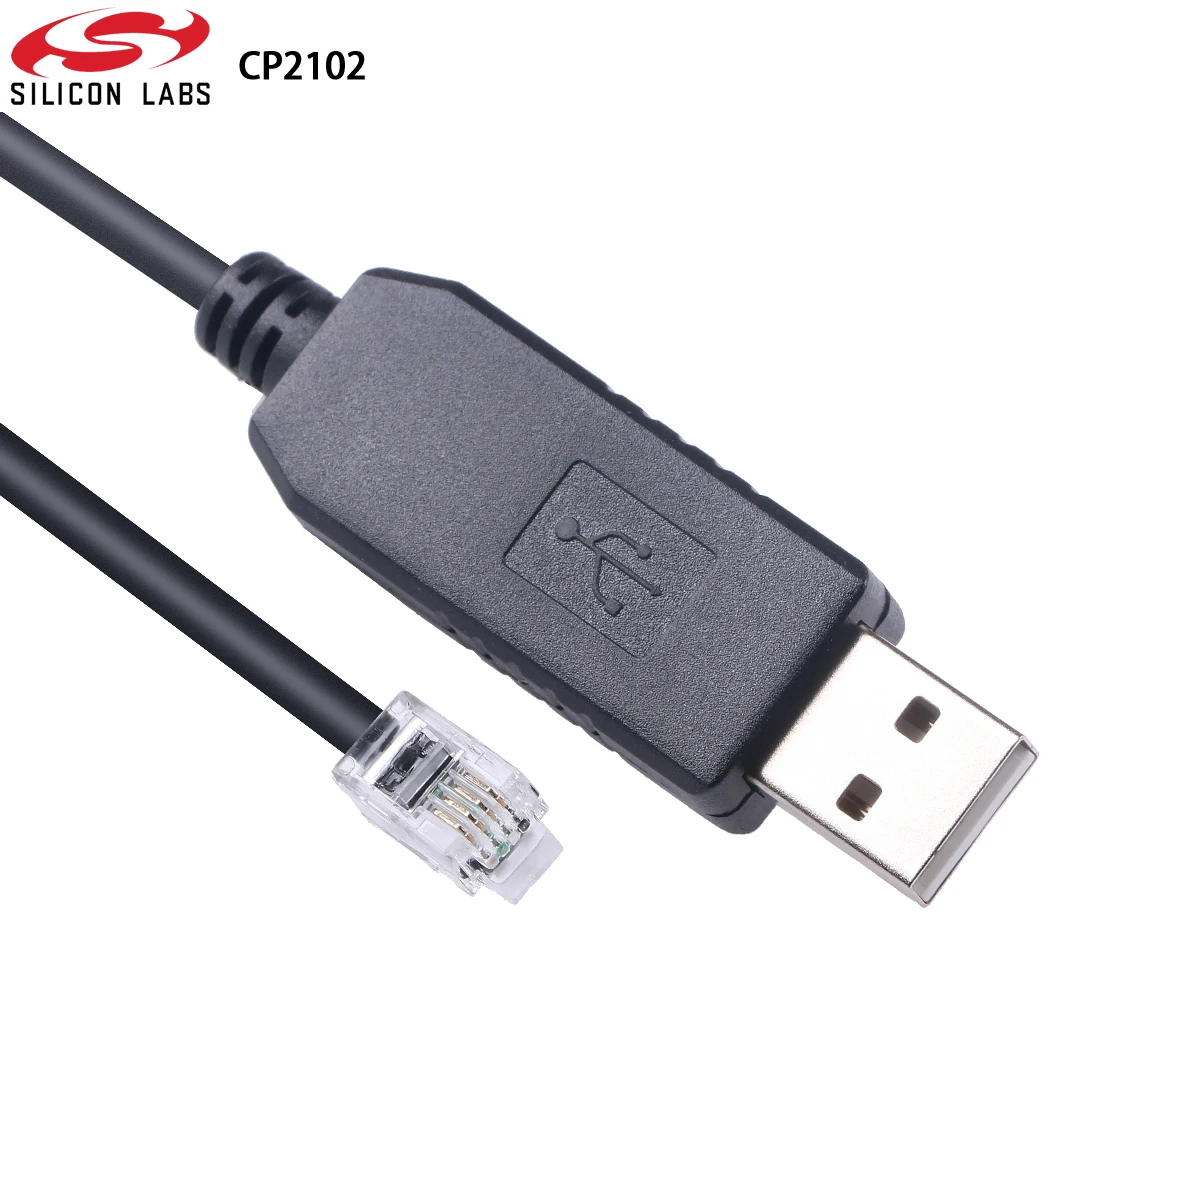 CP2102 USB to RJ9 RS232 Cable for Meade 505 Autostar LX65 ETX127 ETX125 ETX125EC ETX-90 LXD75 LX80 LX90